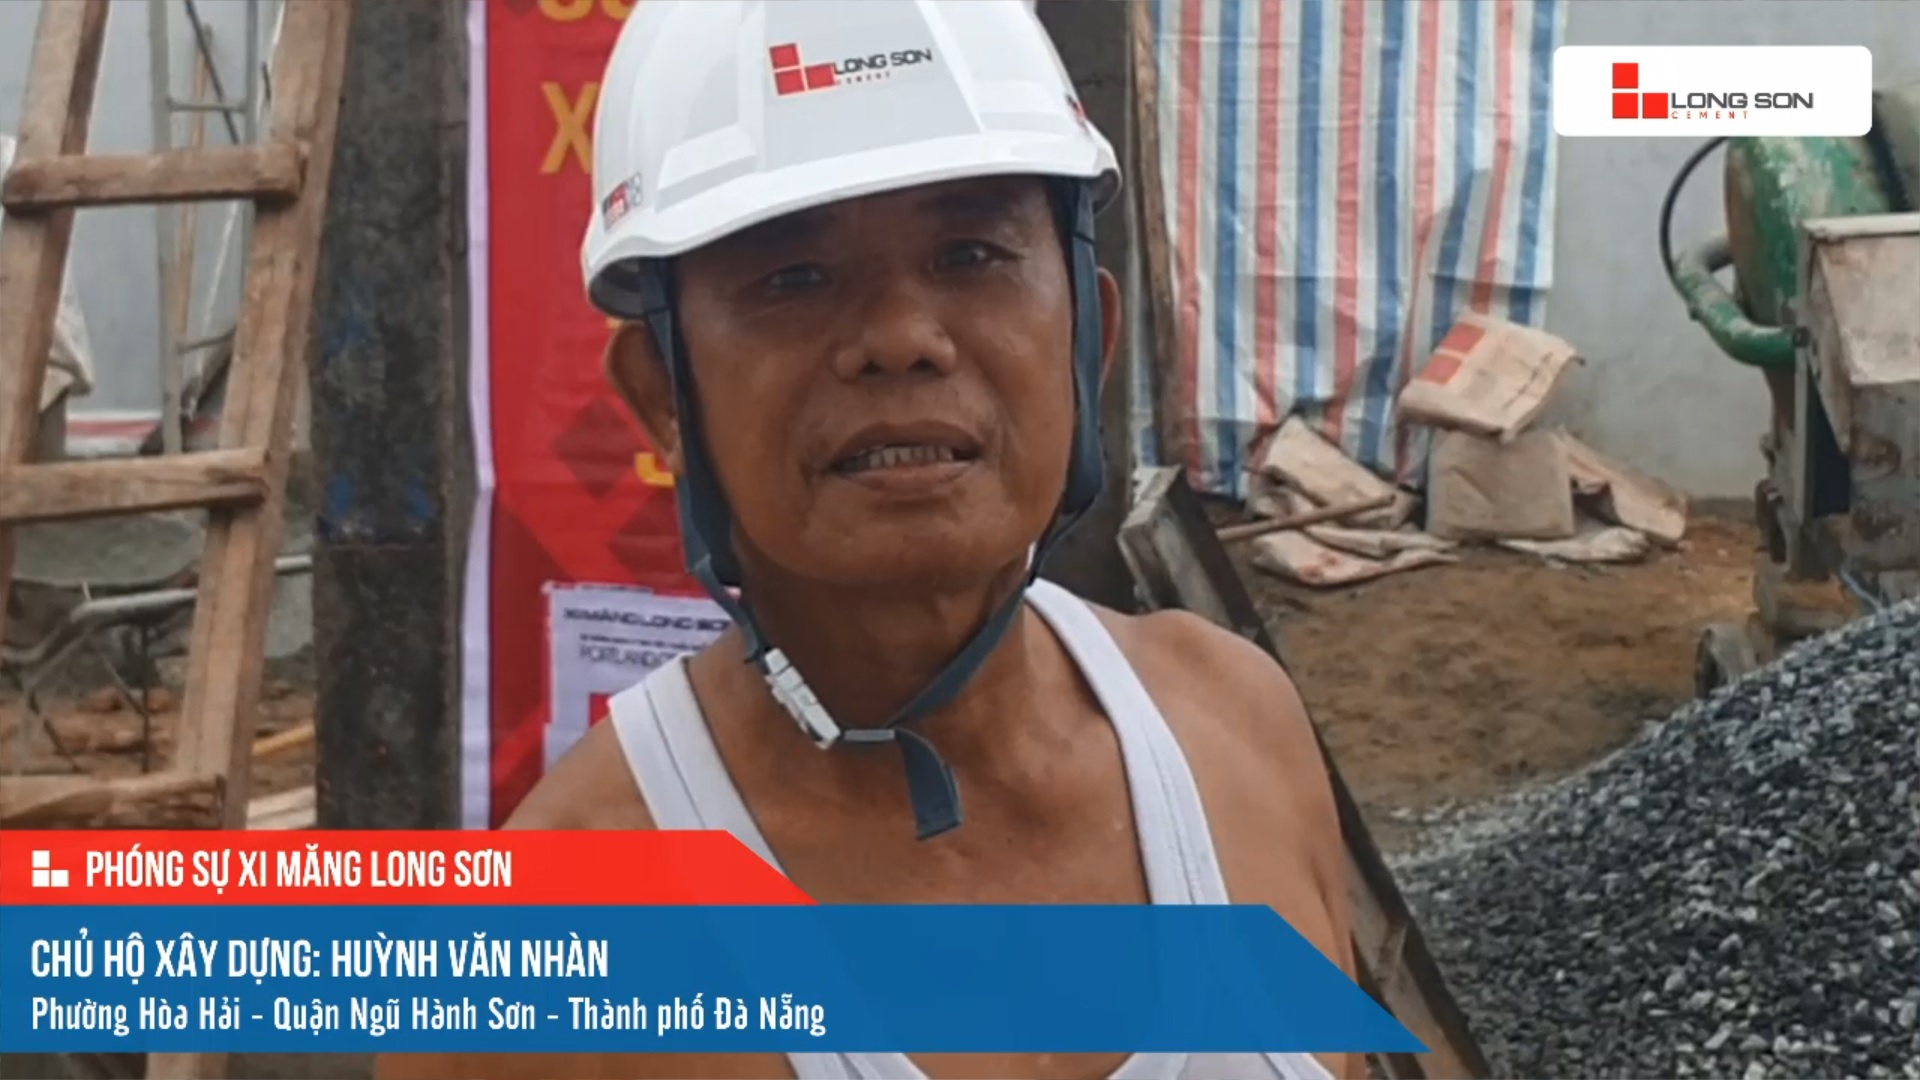 Phóng sự công trình sử dụng Xi măng Long Sơn tại Đà Nẵng ngày 16/10/2021